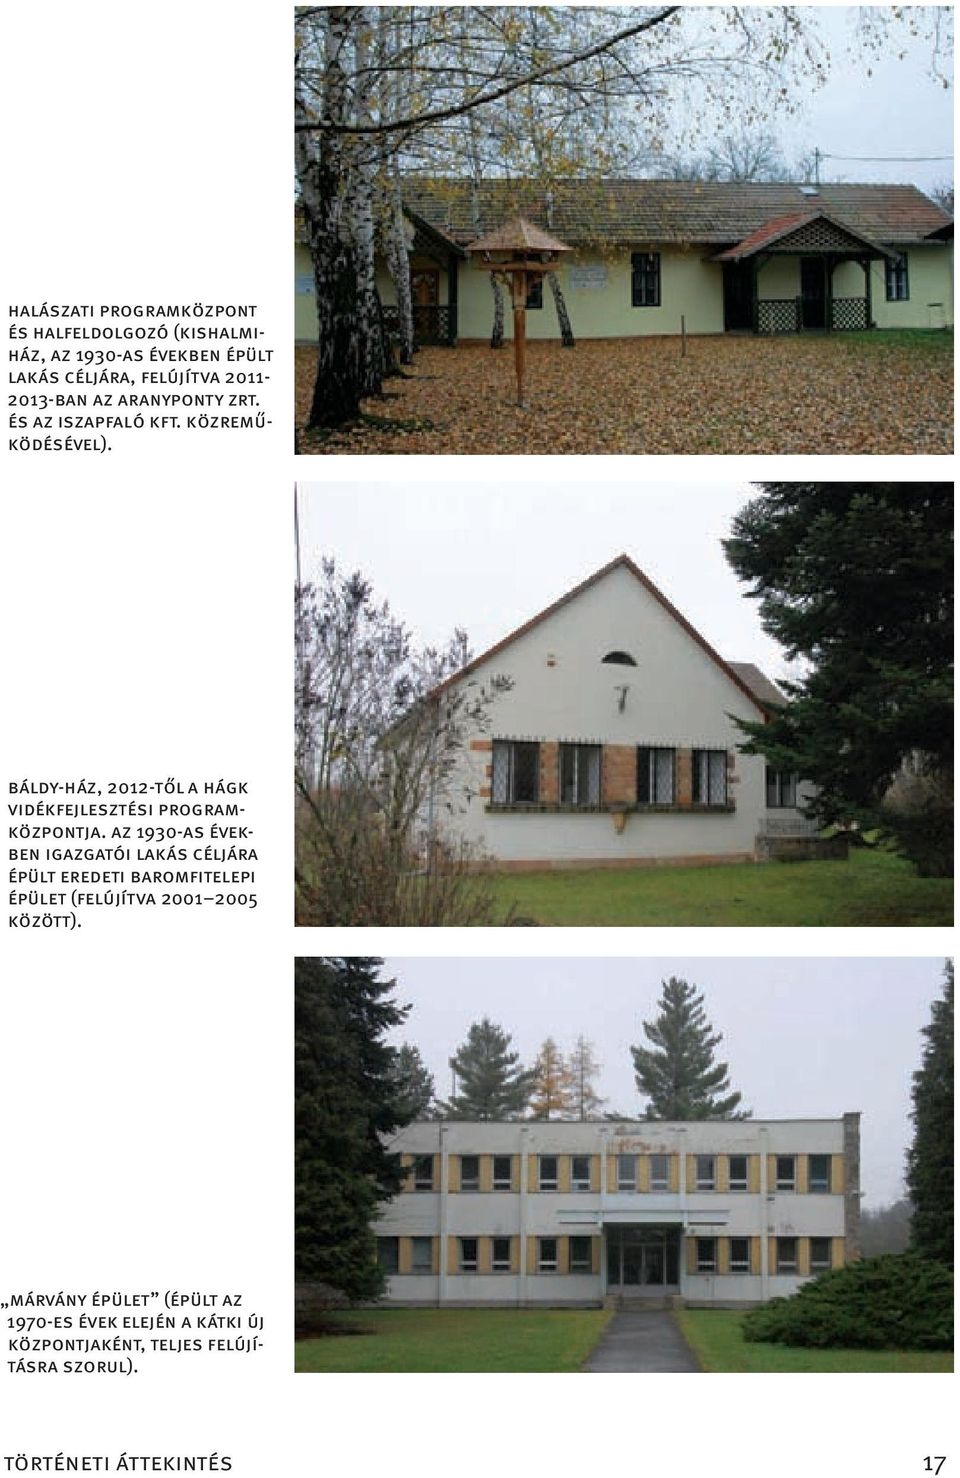 BálDy-ház, 2012-től a hágk vidékfejlesztési PrograMközPontja.